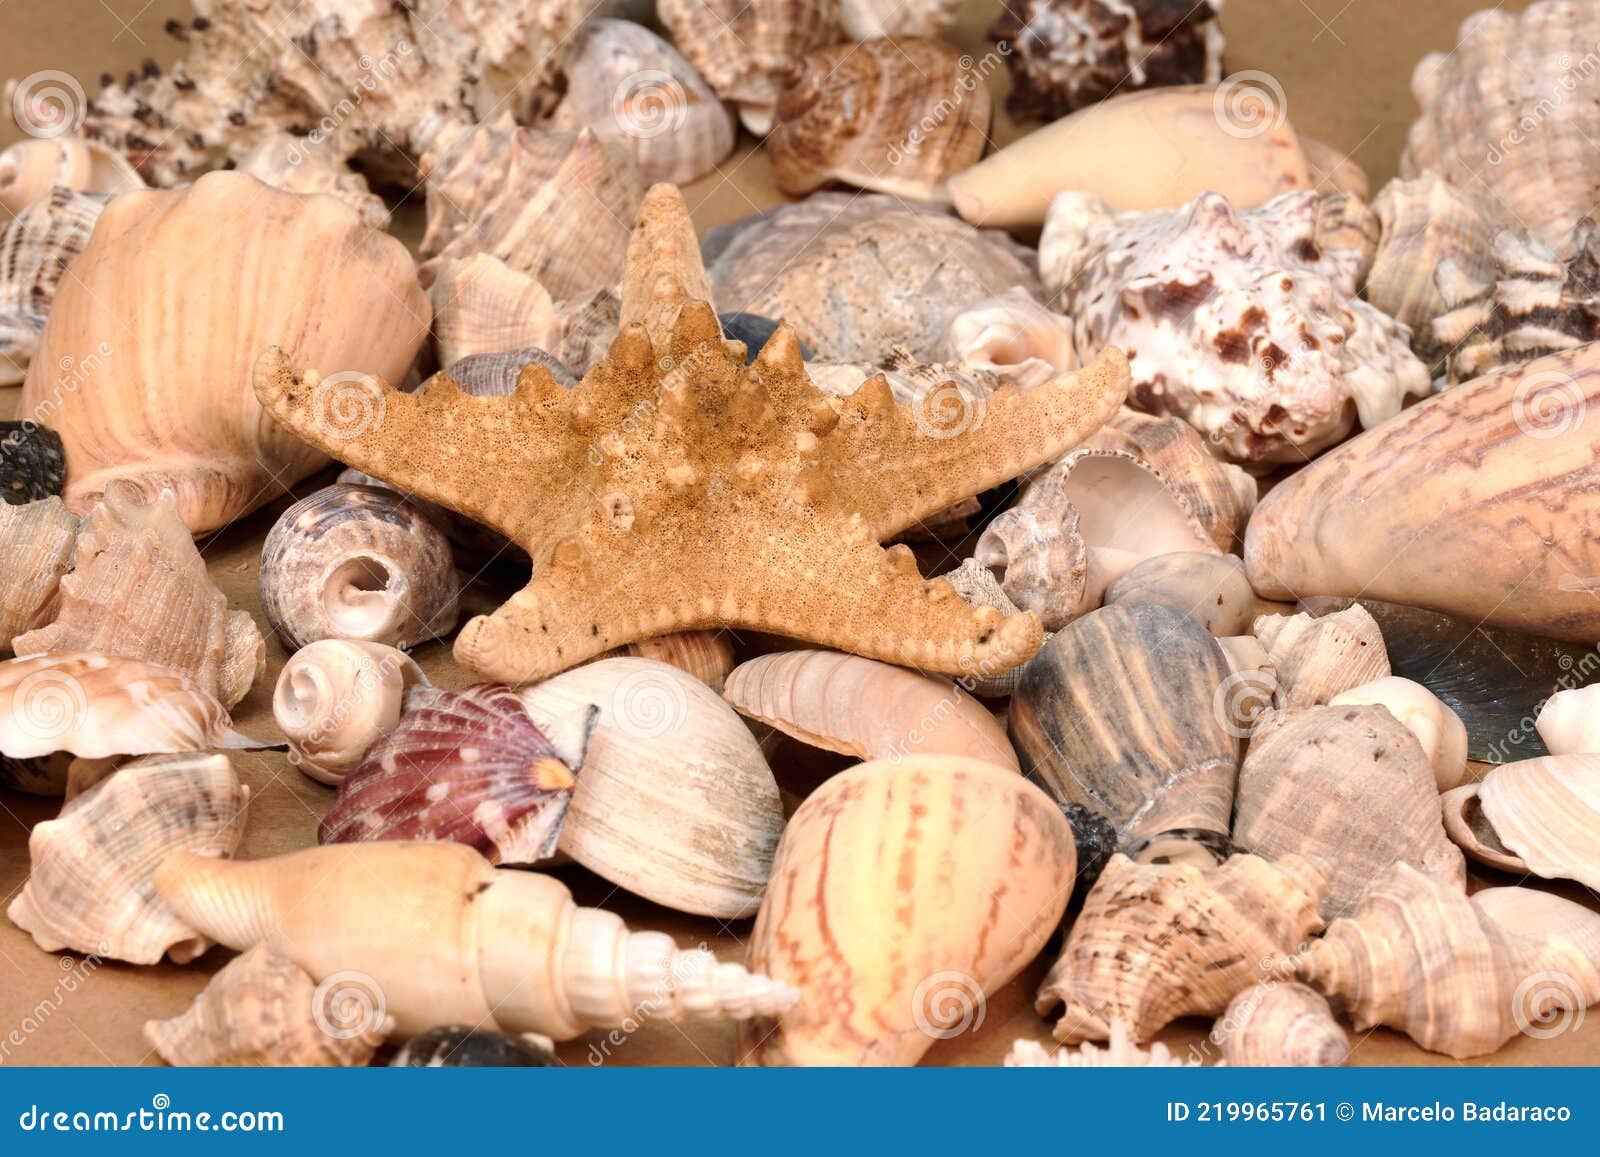 Estrellas De Mar Y Conchas Para La Decoración En La Casa Imagen de archivo  - Imagen de alimento, estrella: 219965761